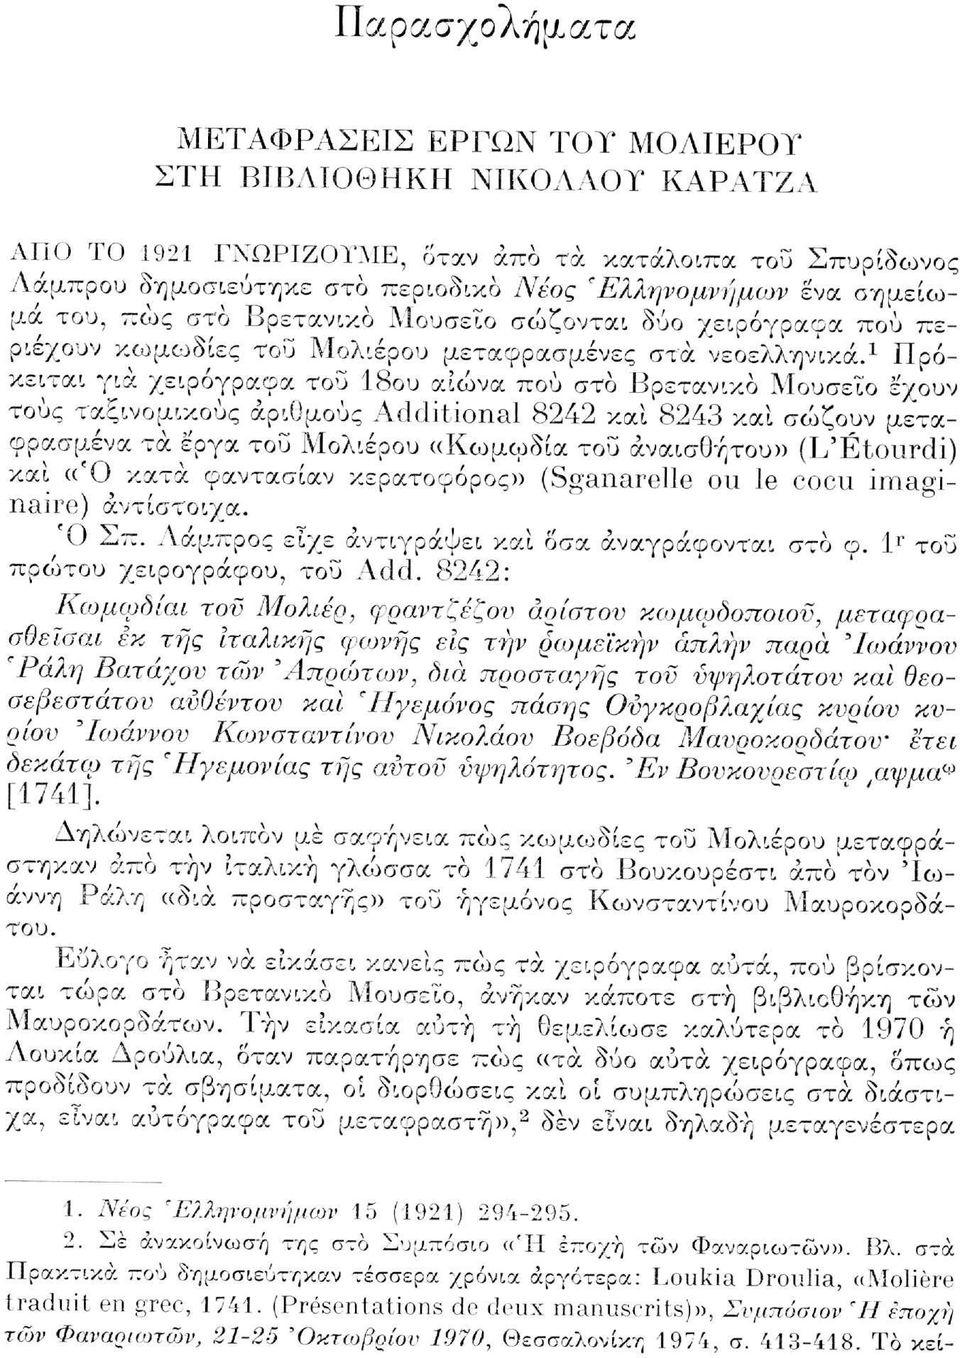 σημείωμα του, πώς στο Βρετανικό Μουσείο σώζονται δύο χειρόγραφα πού περιέχουν κωμωδίες του Μολιέρου μεταφρασμένες στα νεοελληνικά.